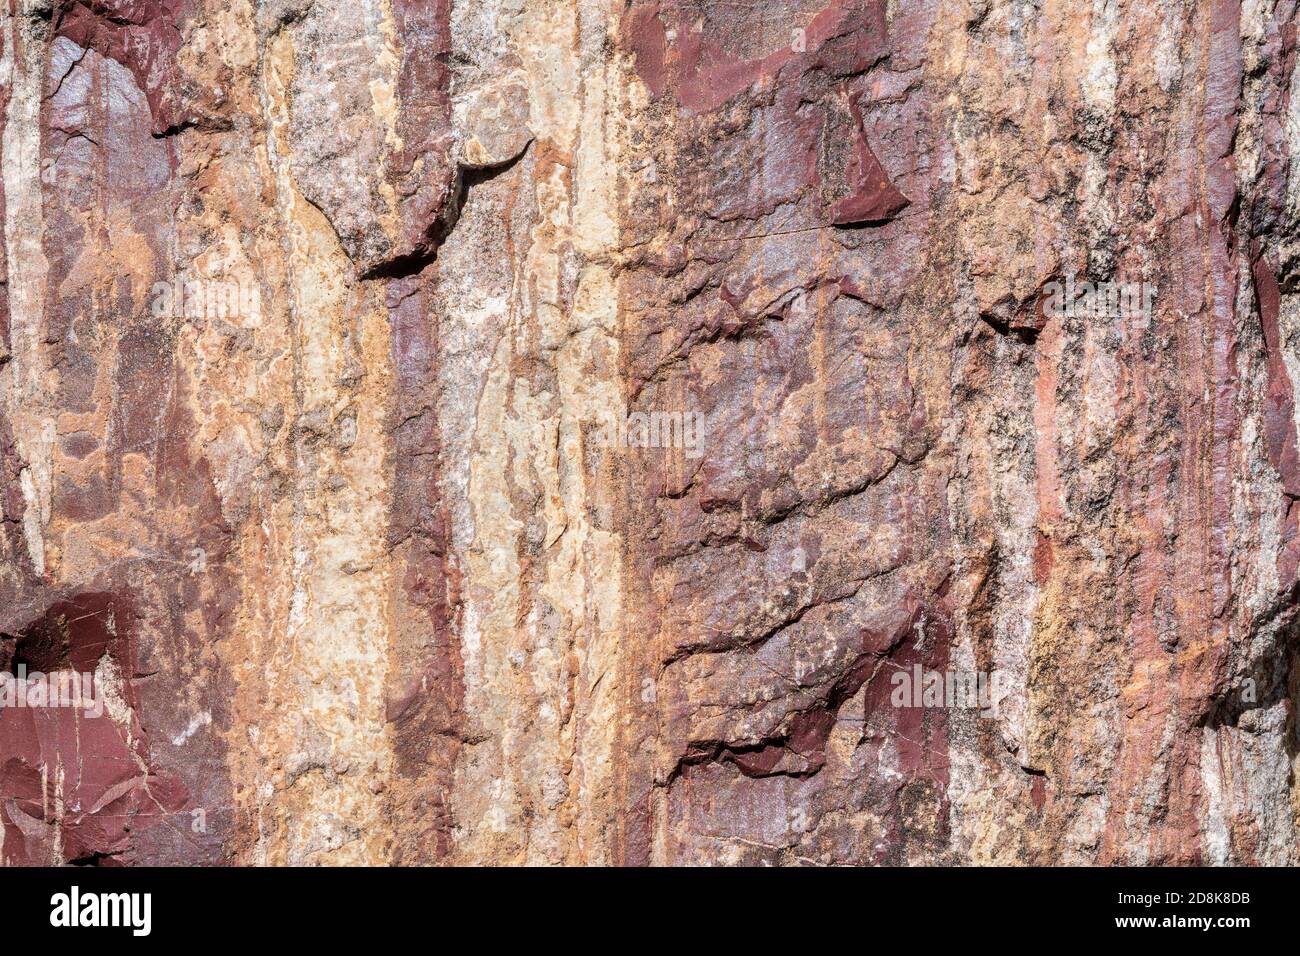 Präkambrisches metamorphes Gestein, Lake Superior Region, W. Upper Peninsula Michigan, USA, 4.5 bis 5 Milliarden Jahre alt, von Dominique Braud/Dembinsky Foto A Stockfoto